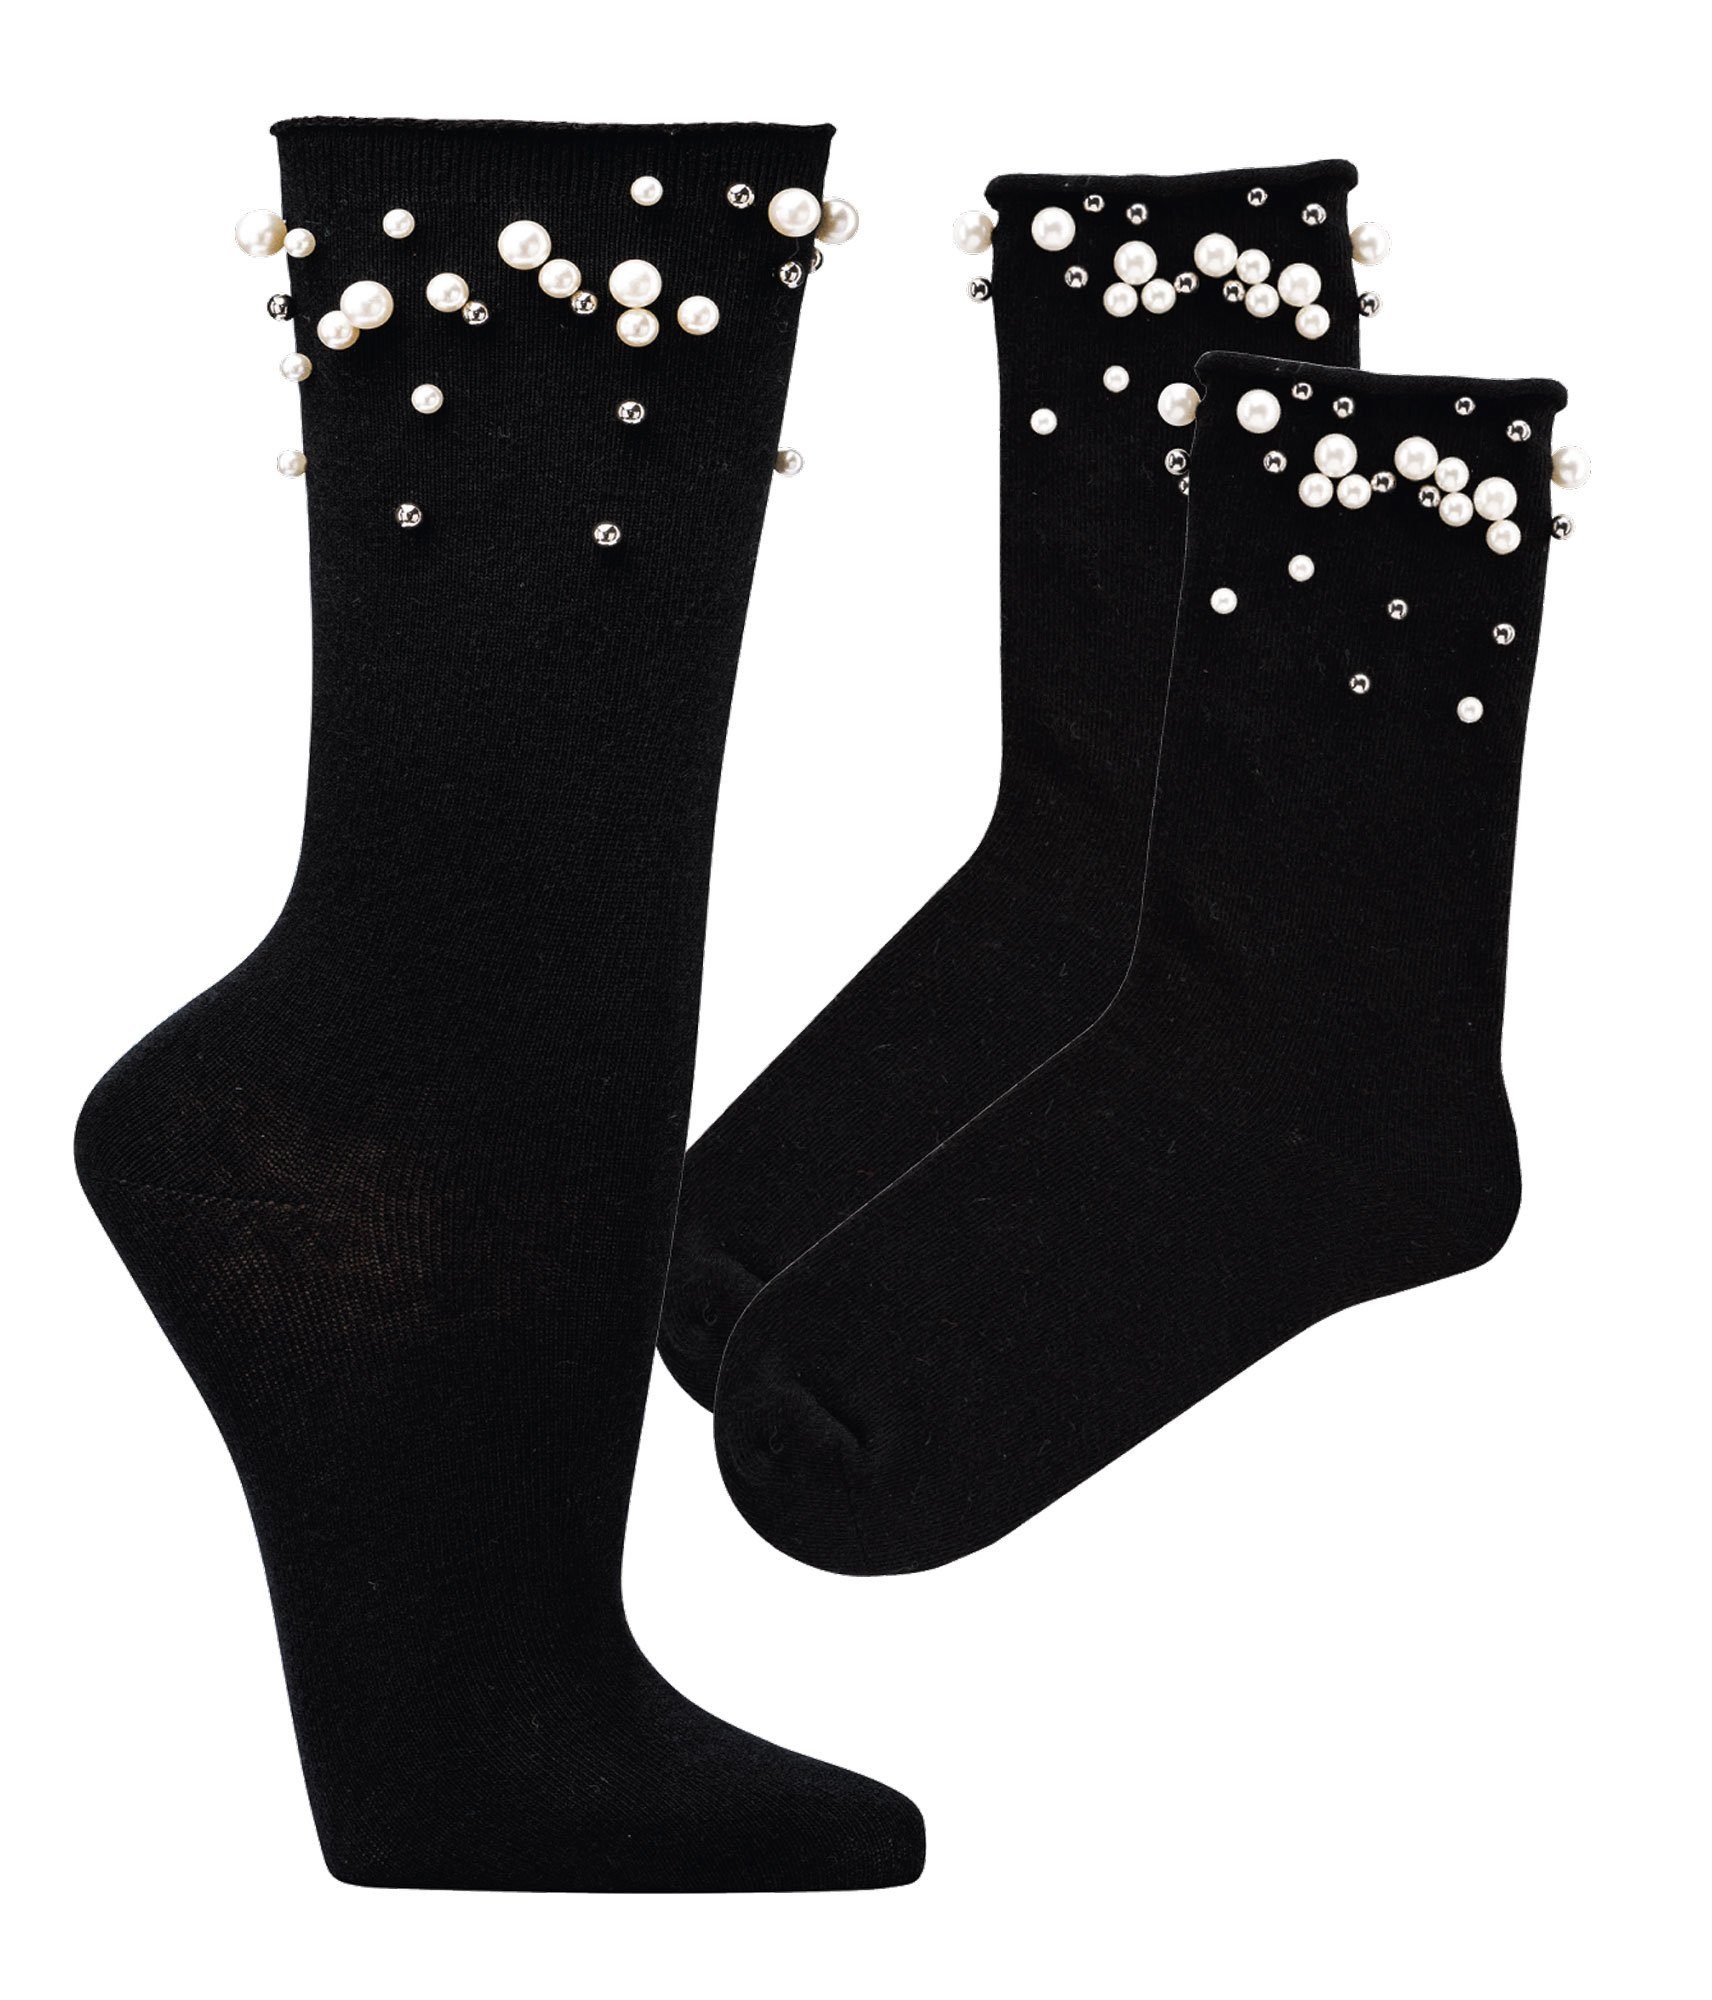 Wowerat Socken Schwarze festliche Socken Damen Teenager Viskose (2 Paar) mit künstlichen Perlen verziert